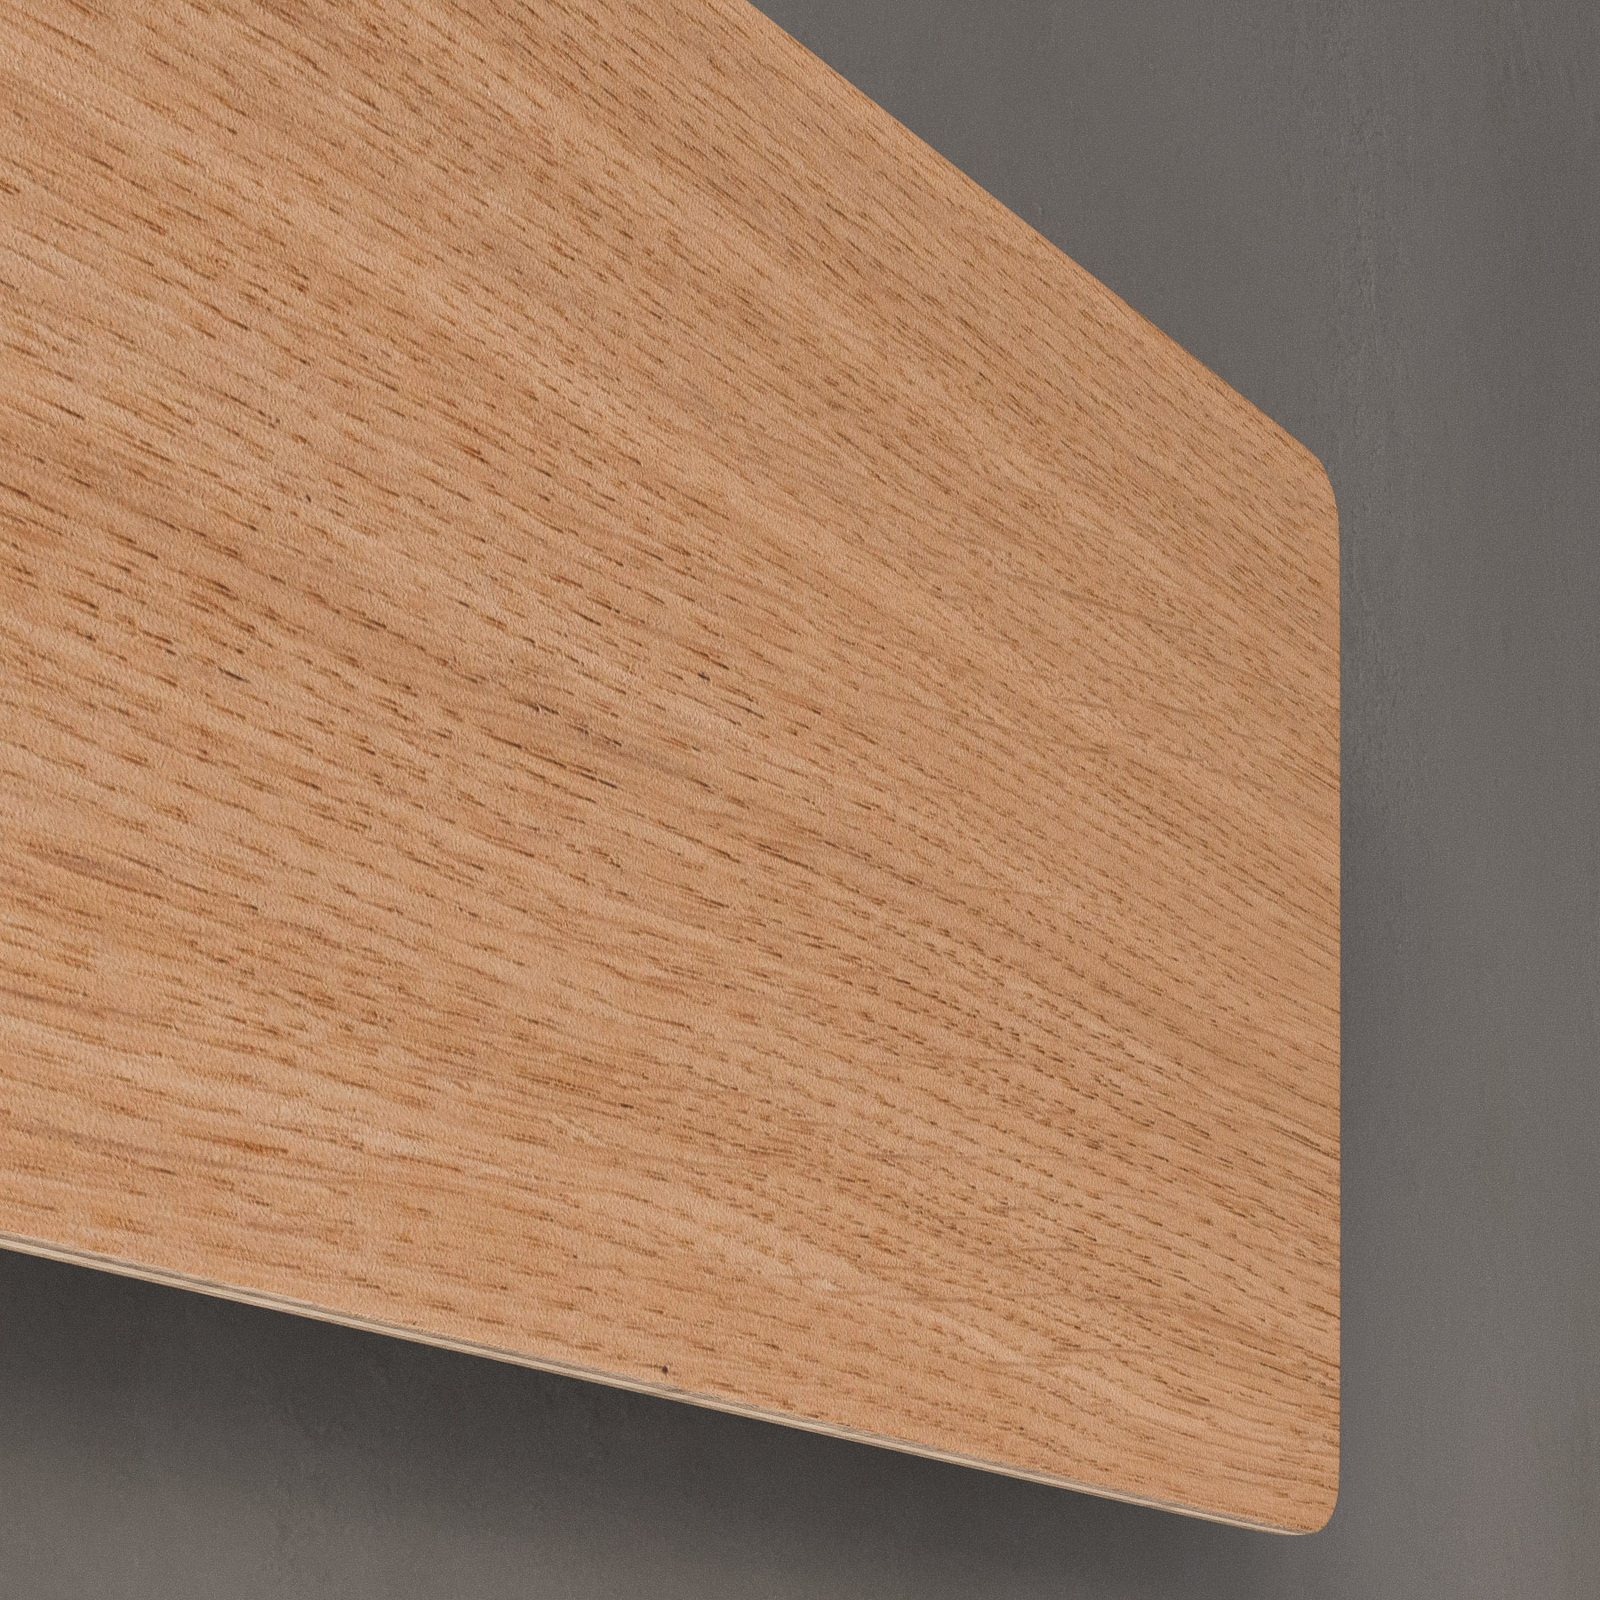 Envostar Tavola aplique, madera de roble, 35x16cm